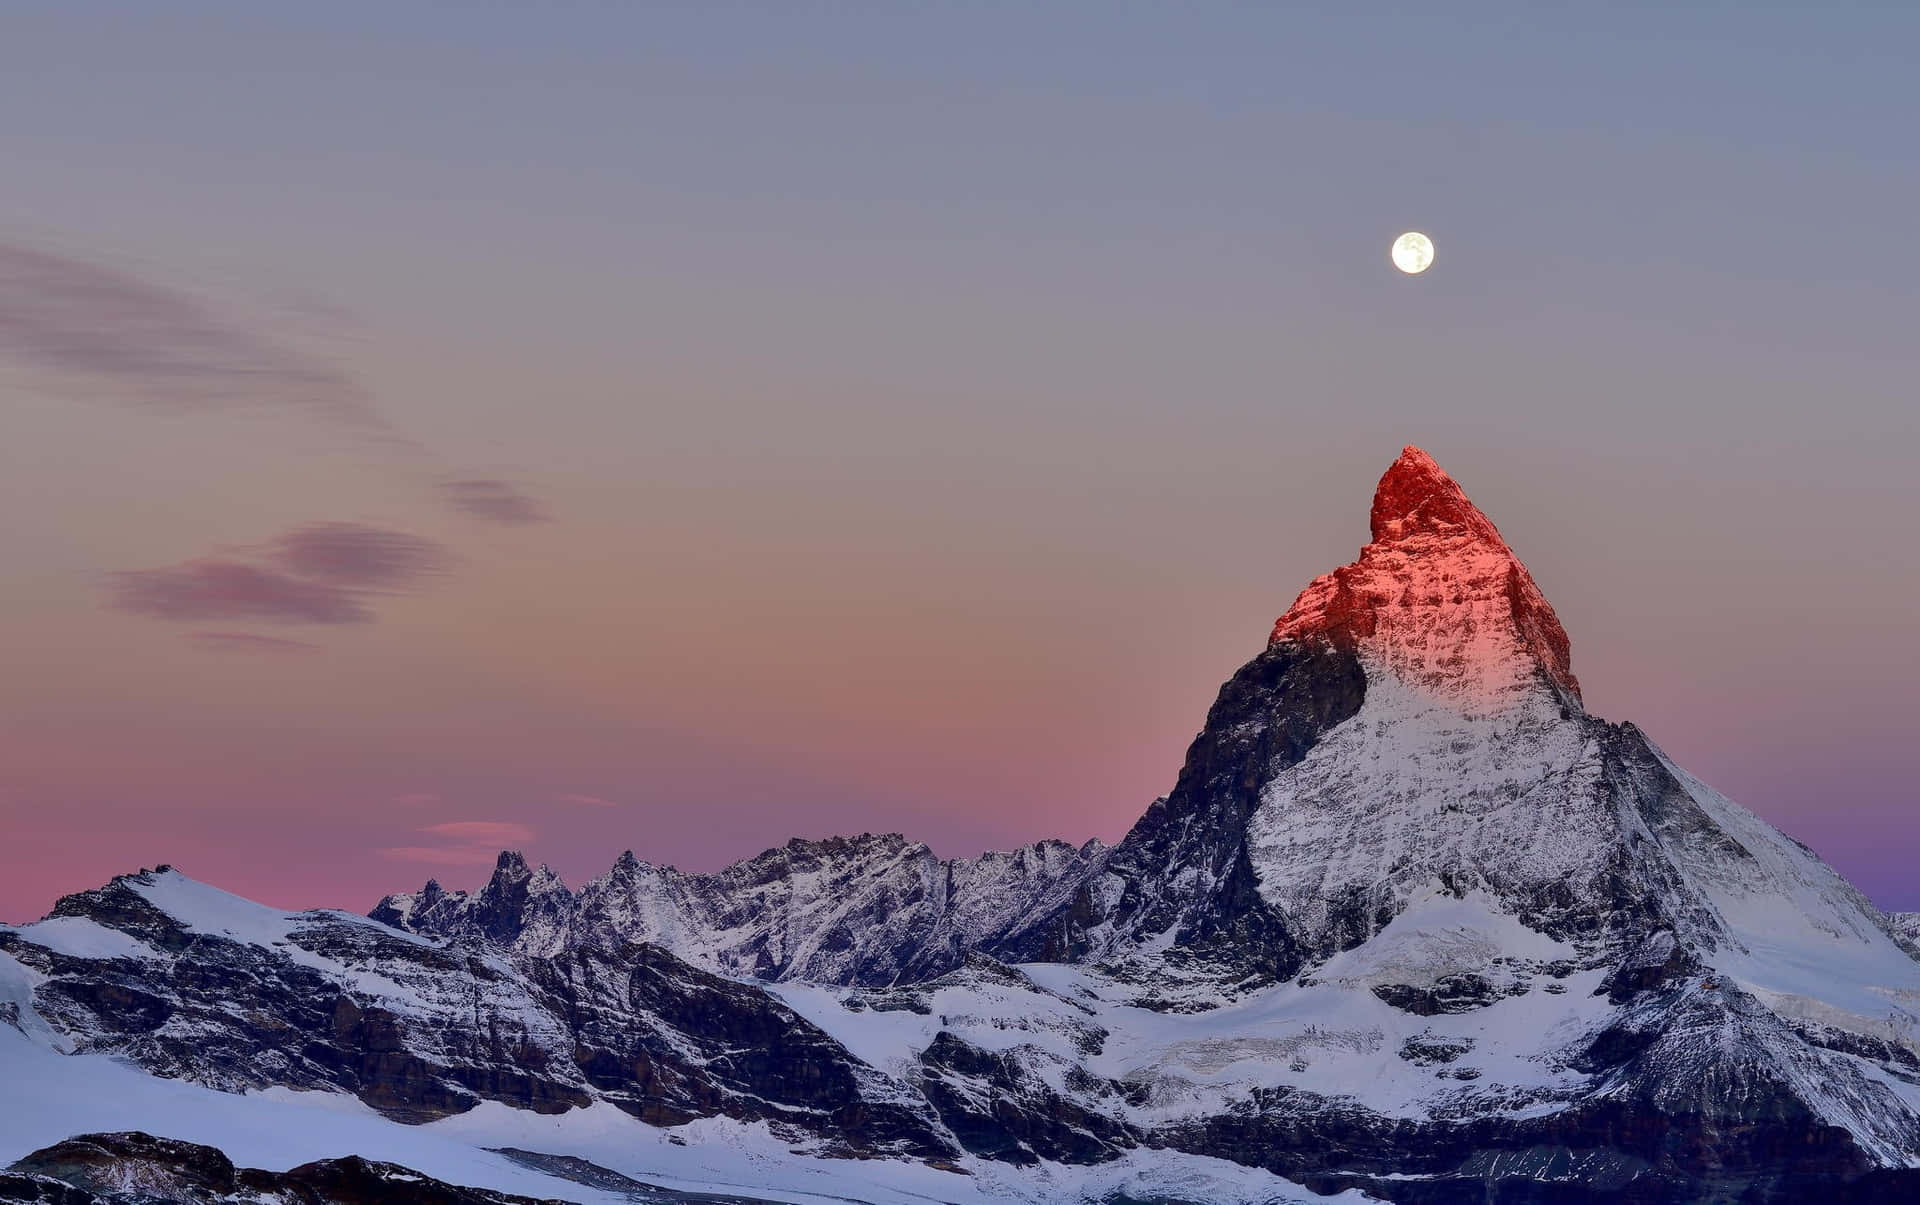 Matterhorn Wallpaper